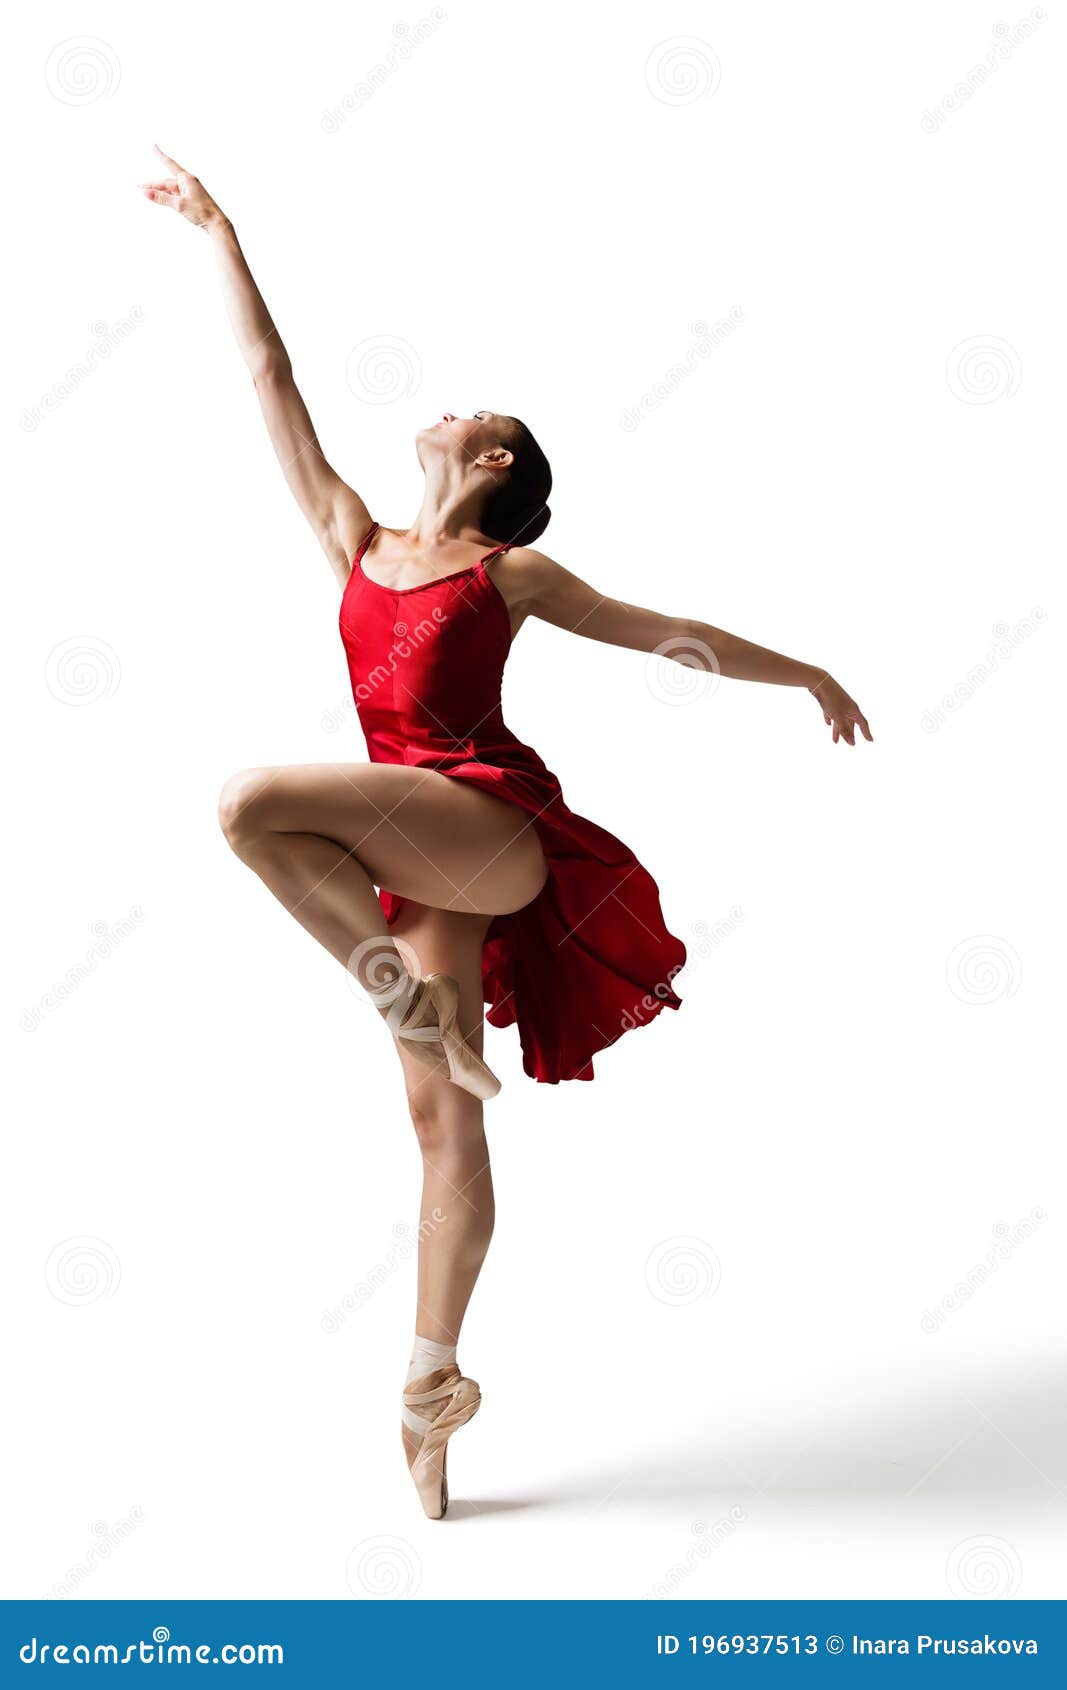 Soulier de Pointes de Ballet Classique - Orya par Virevolte